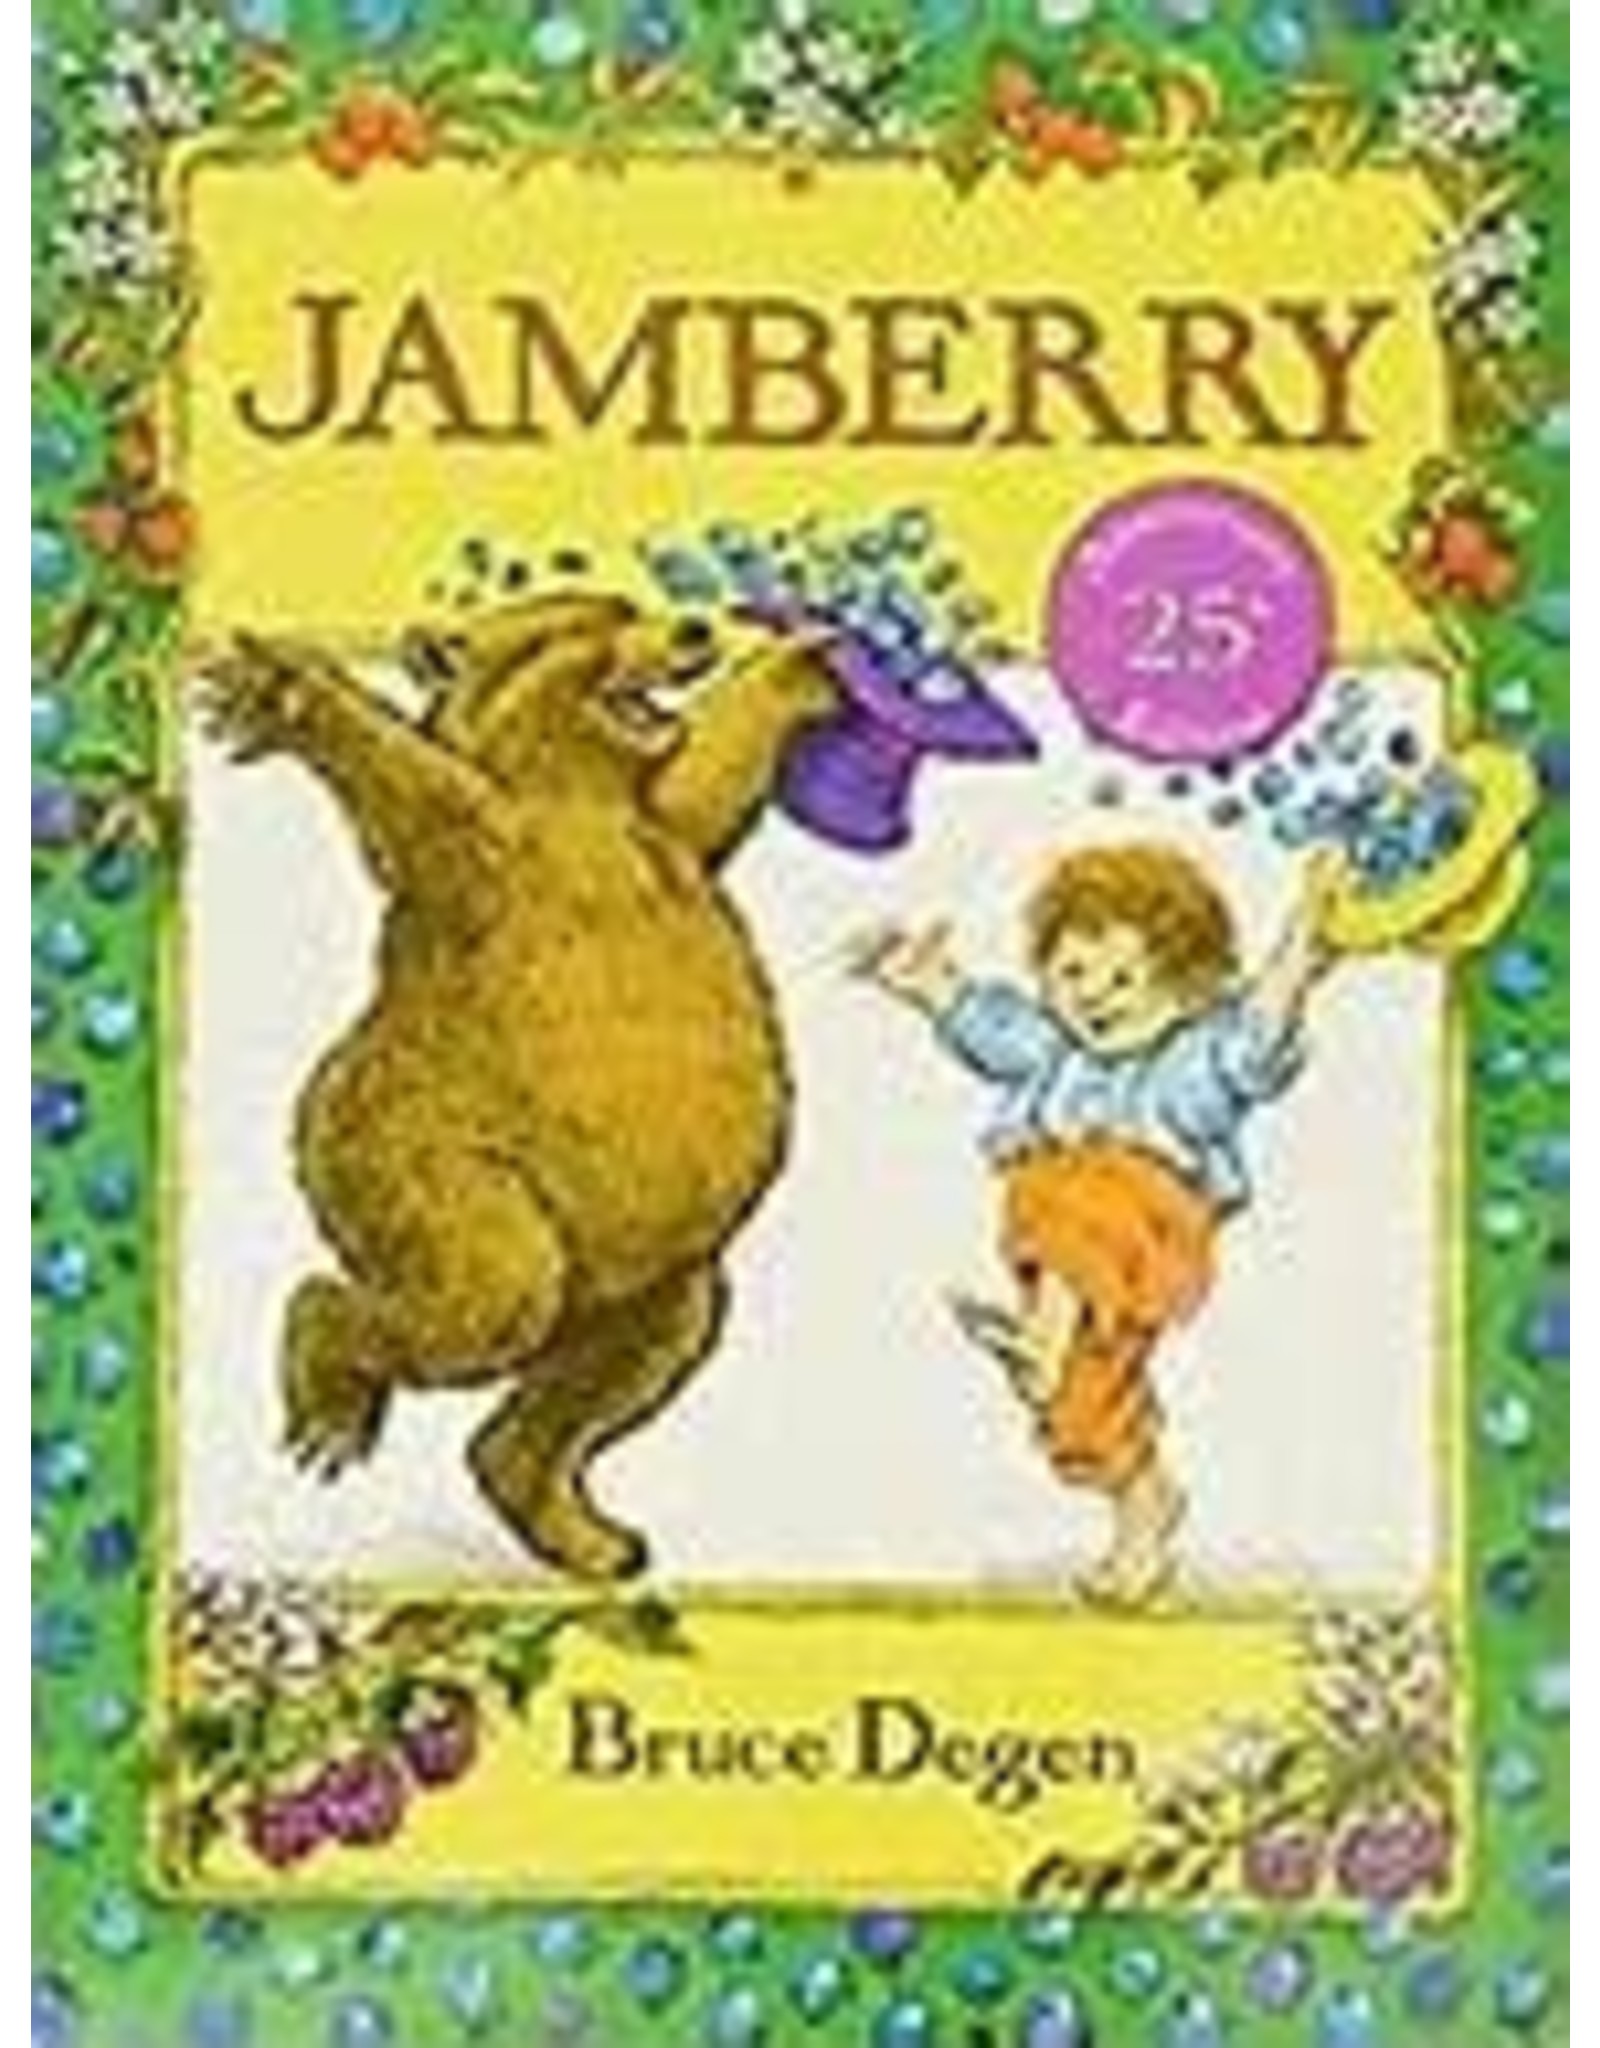 Jamberry - Bruce Degen